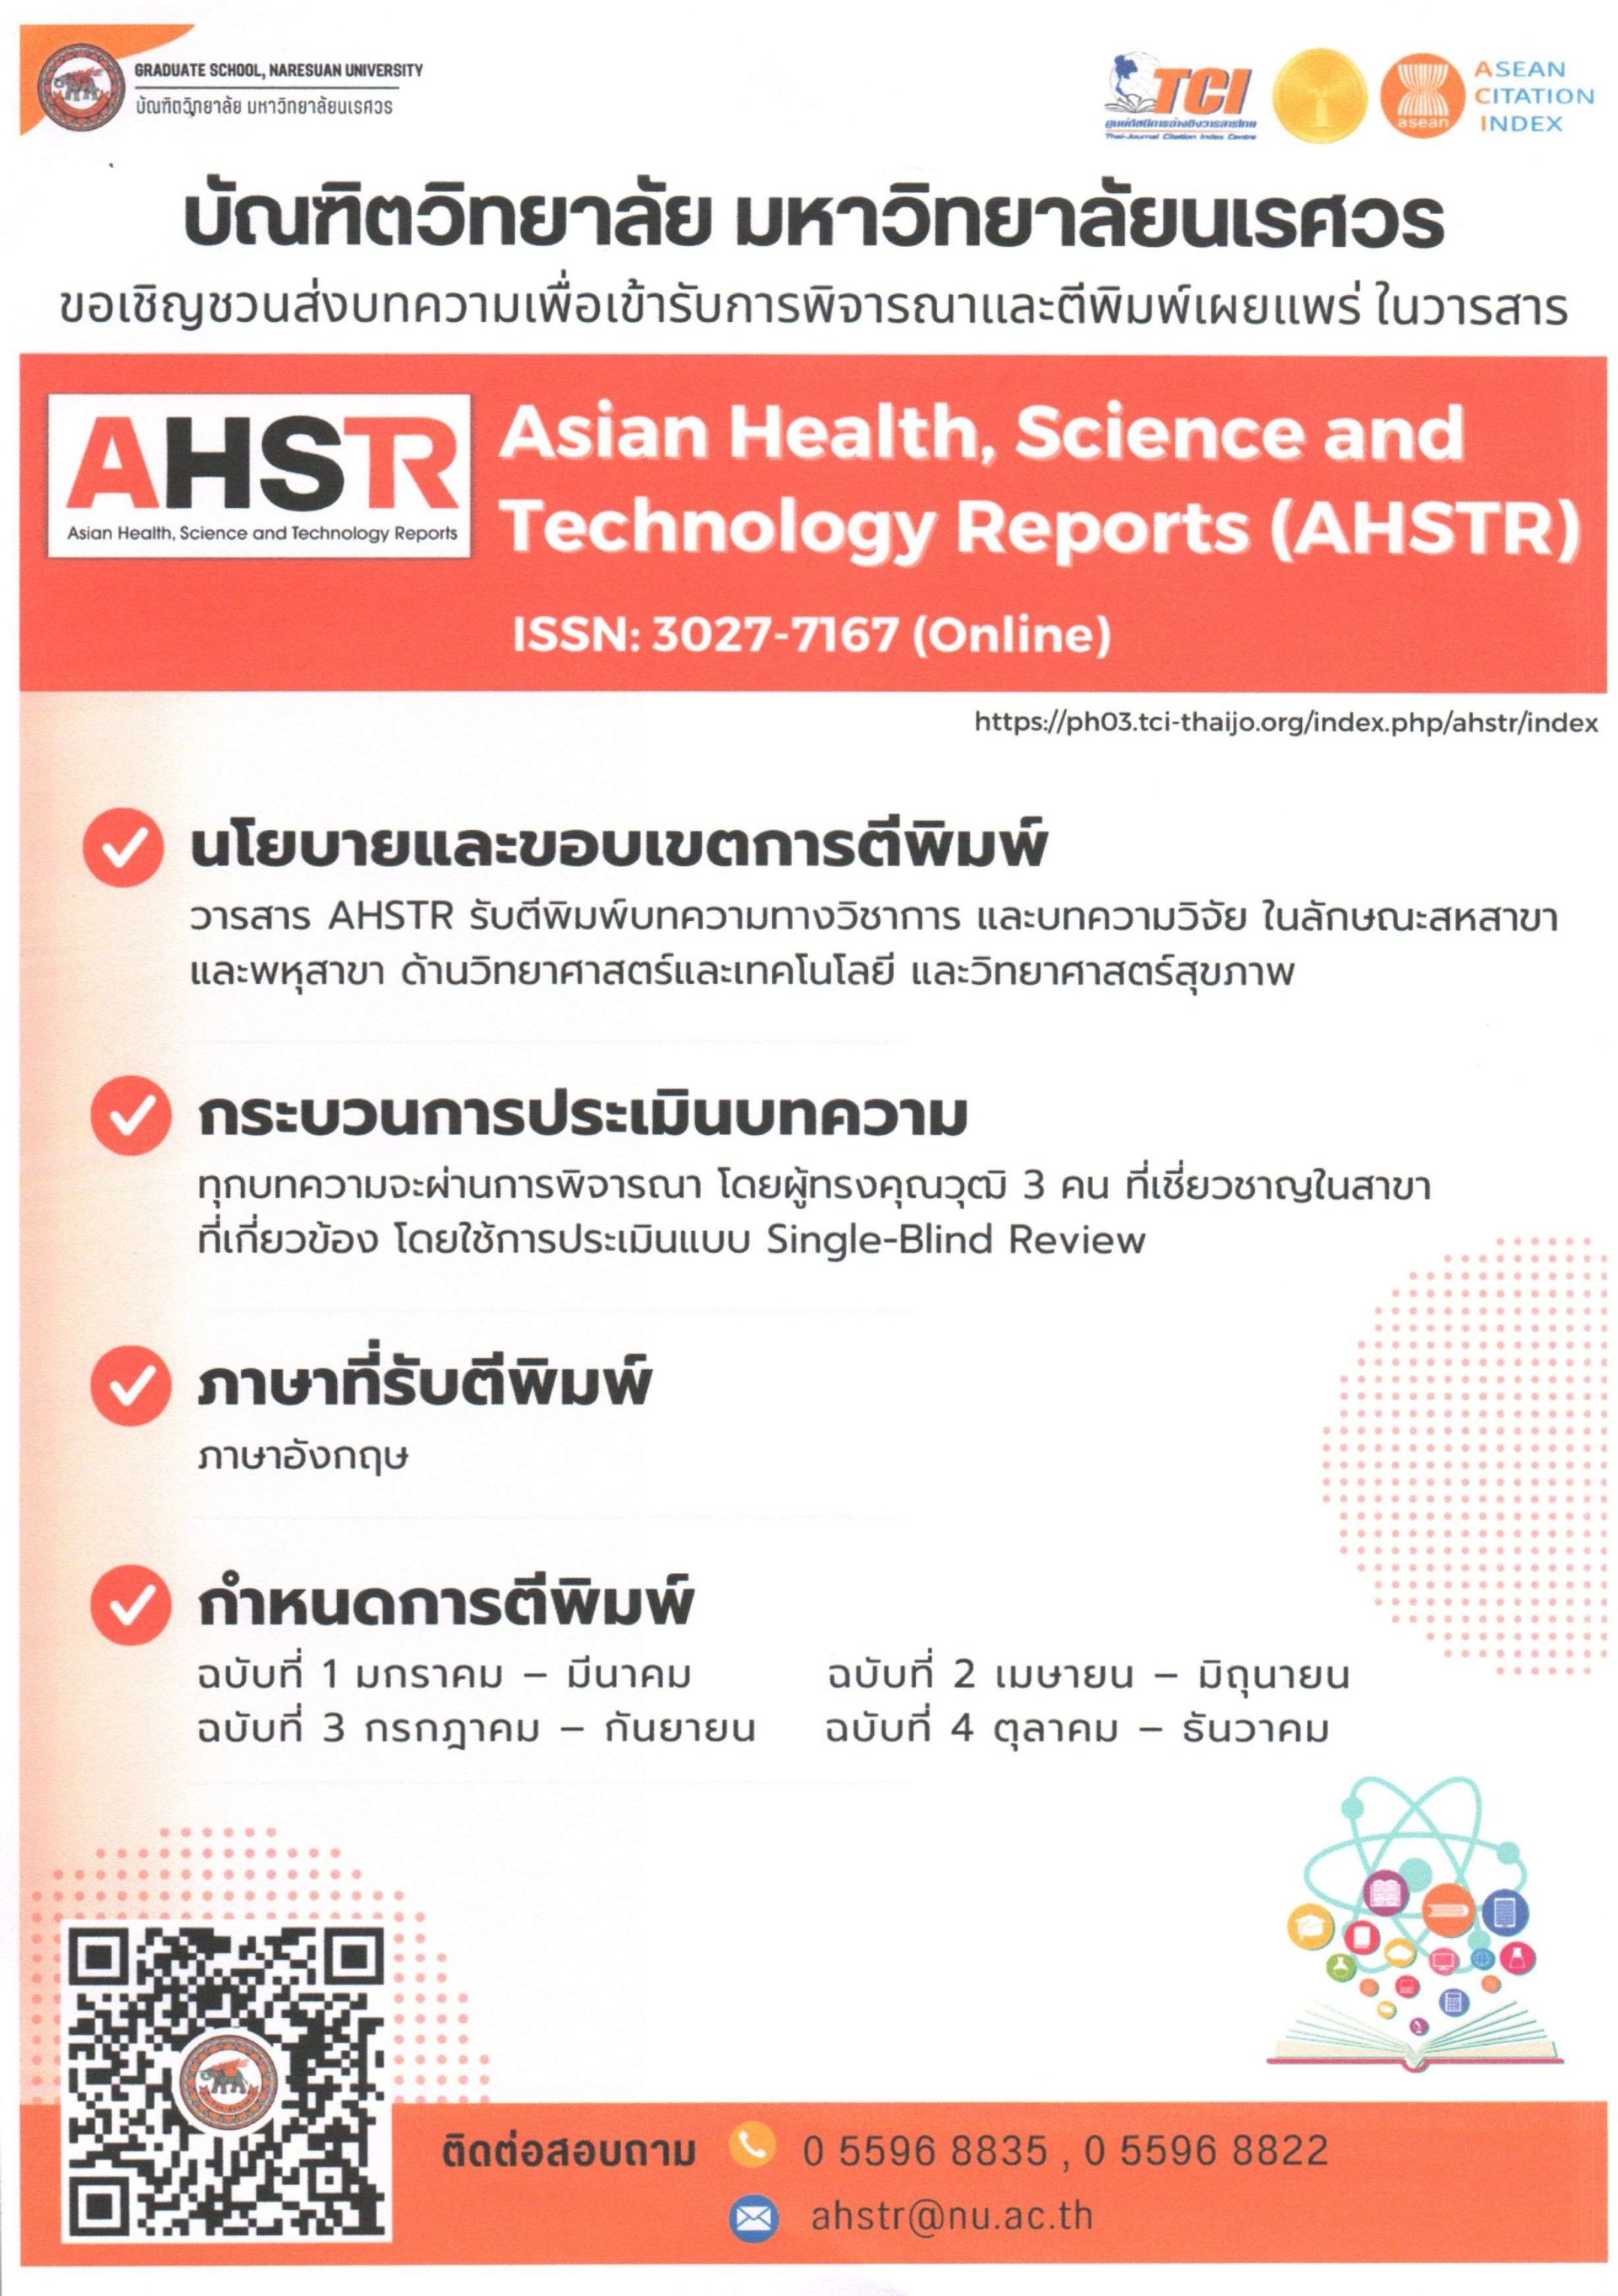 ประชาสัมพันธ์เชิญชวนเข้าร่วมส่งบทความเพื่อตีพิมพ์เผยแพร่ในวารสาร Asian Health, Science and Technology Reports (AHATR)